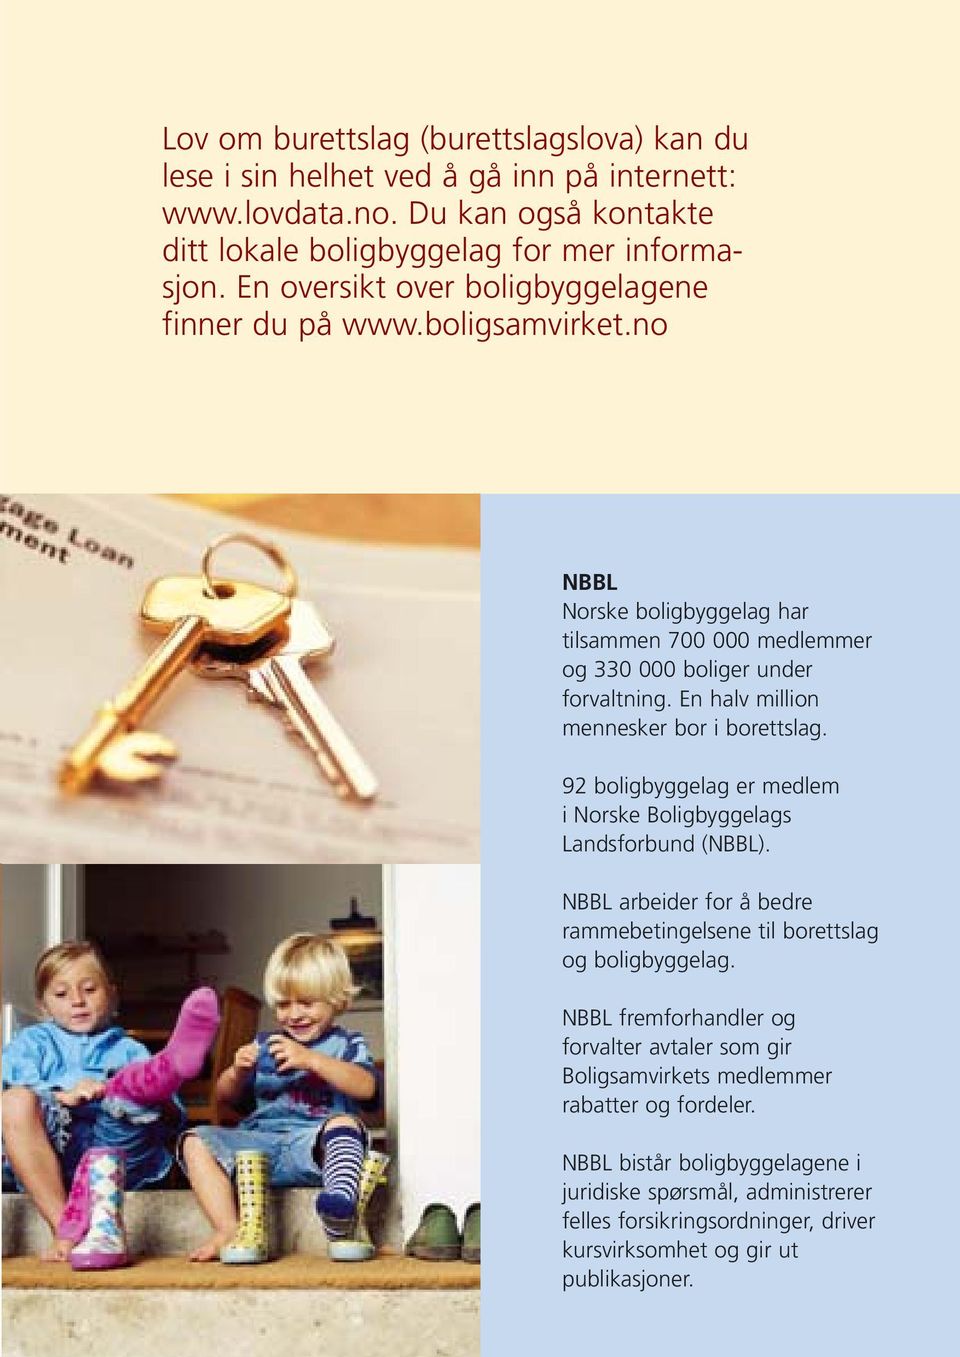 En halv million mennesker bor i borettslag. 92 boligbyggelag er medlem i Norske Boligbyggelags Landsforbund (NBBL). NBBL arbeider for å bedre rammebetingelsene til borettslag og boligbyggelag.